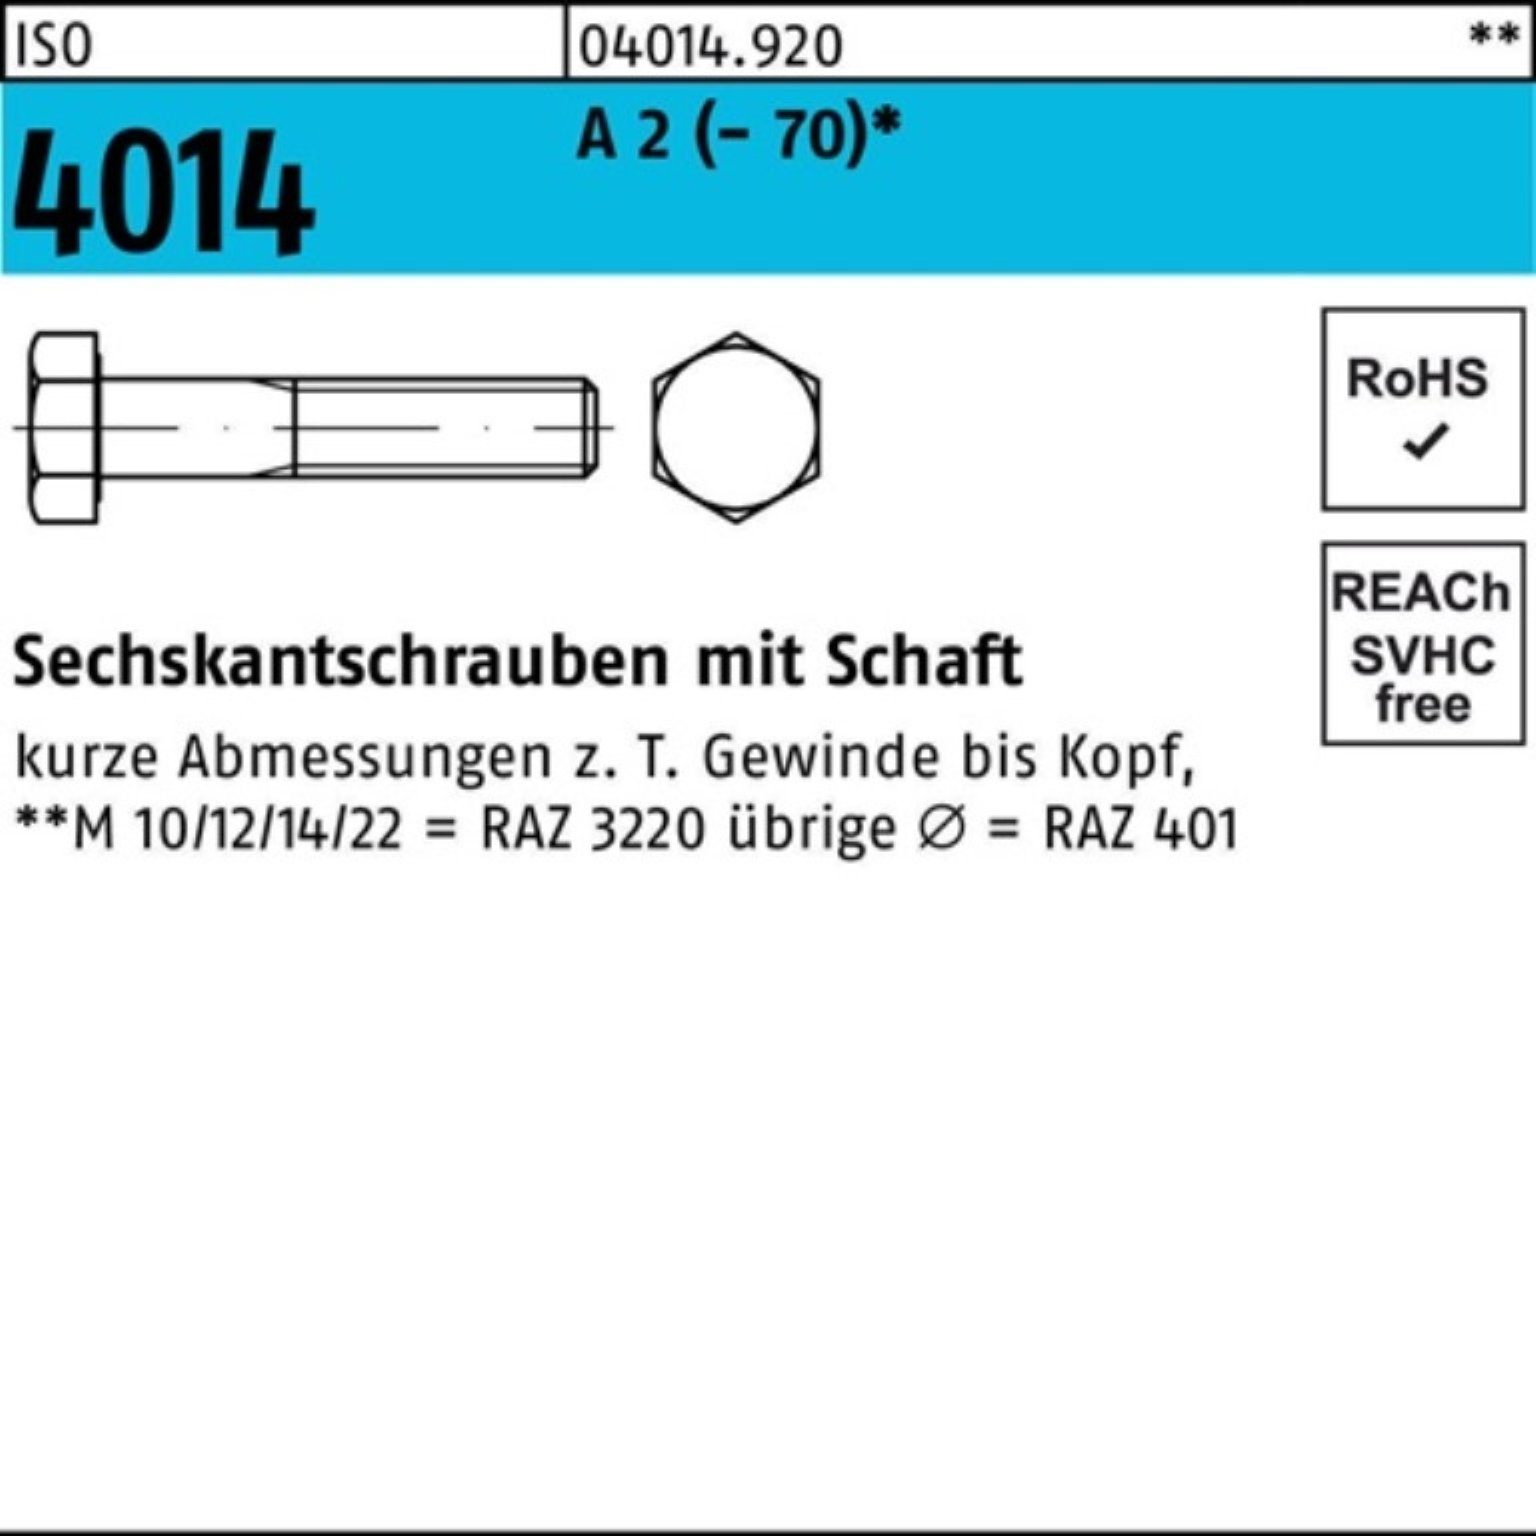 Bufab Sechskantschraube 100er Pack Sechskantschraube ISO 4014 Schaft M10x 220 A 2 (70) 1 St